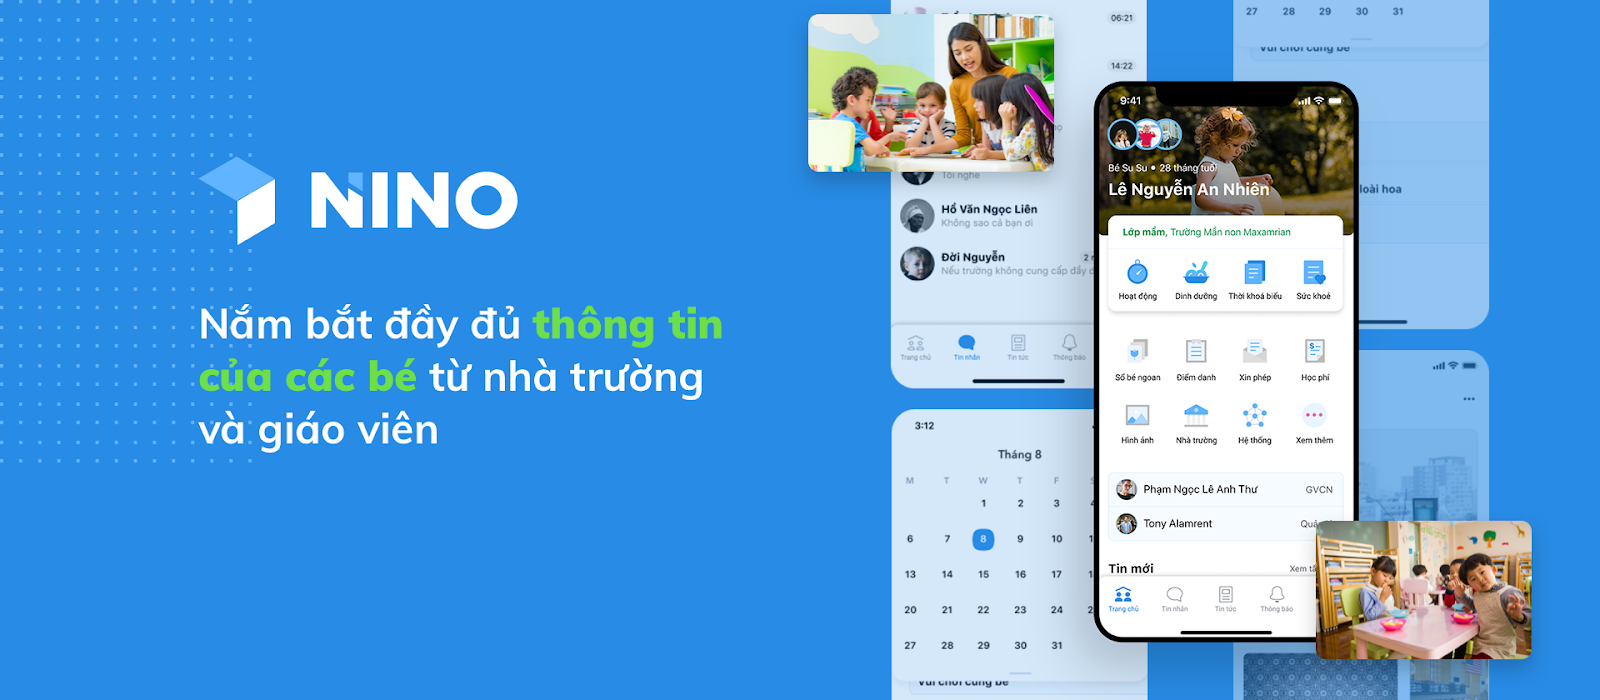 nino-app-duoc-thiet-ke-dac-biet-cho-truong-hoc